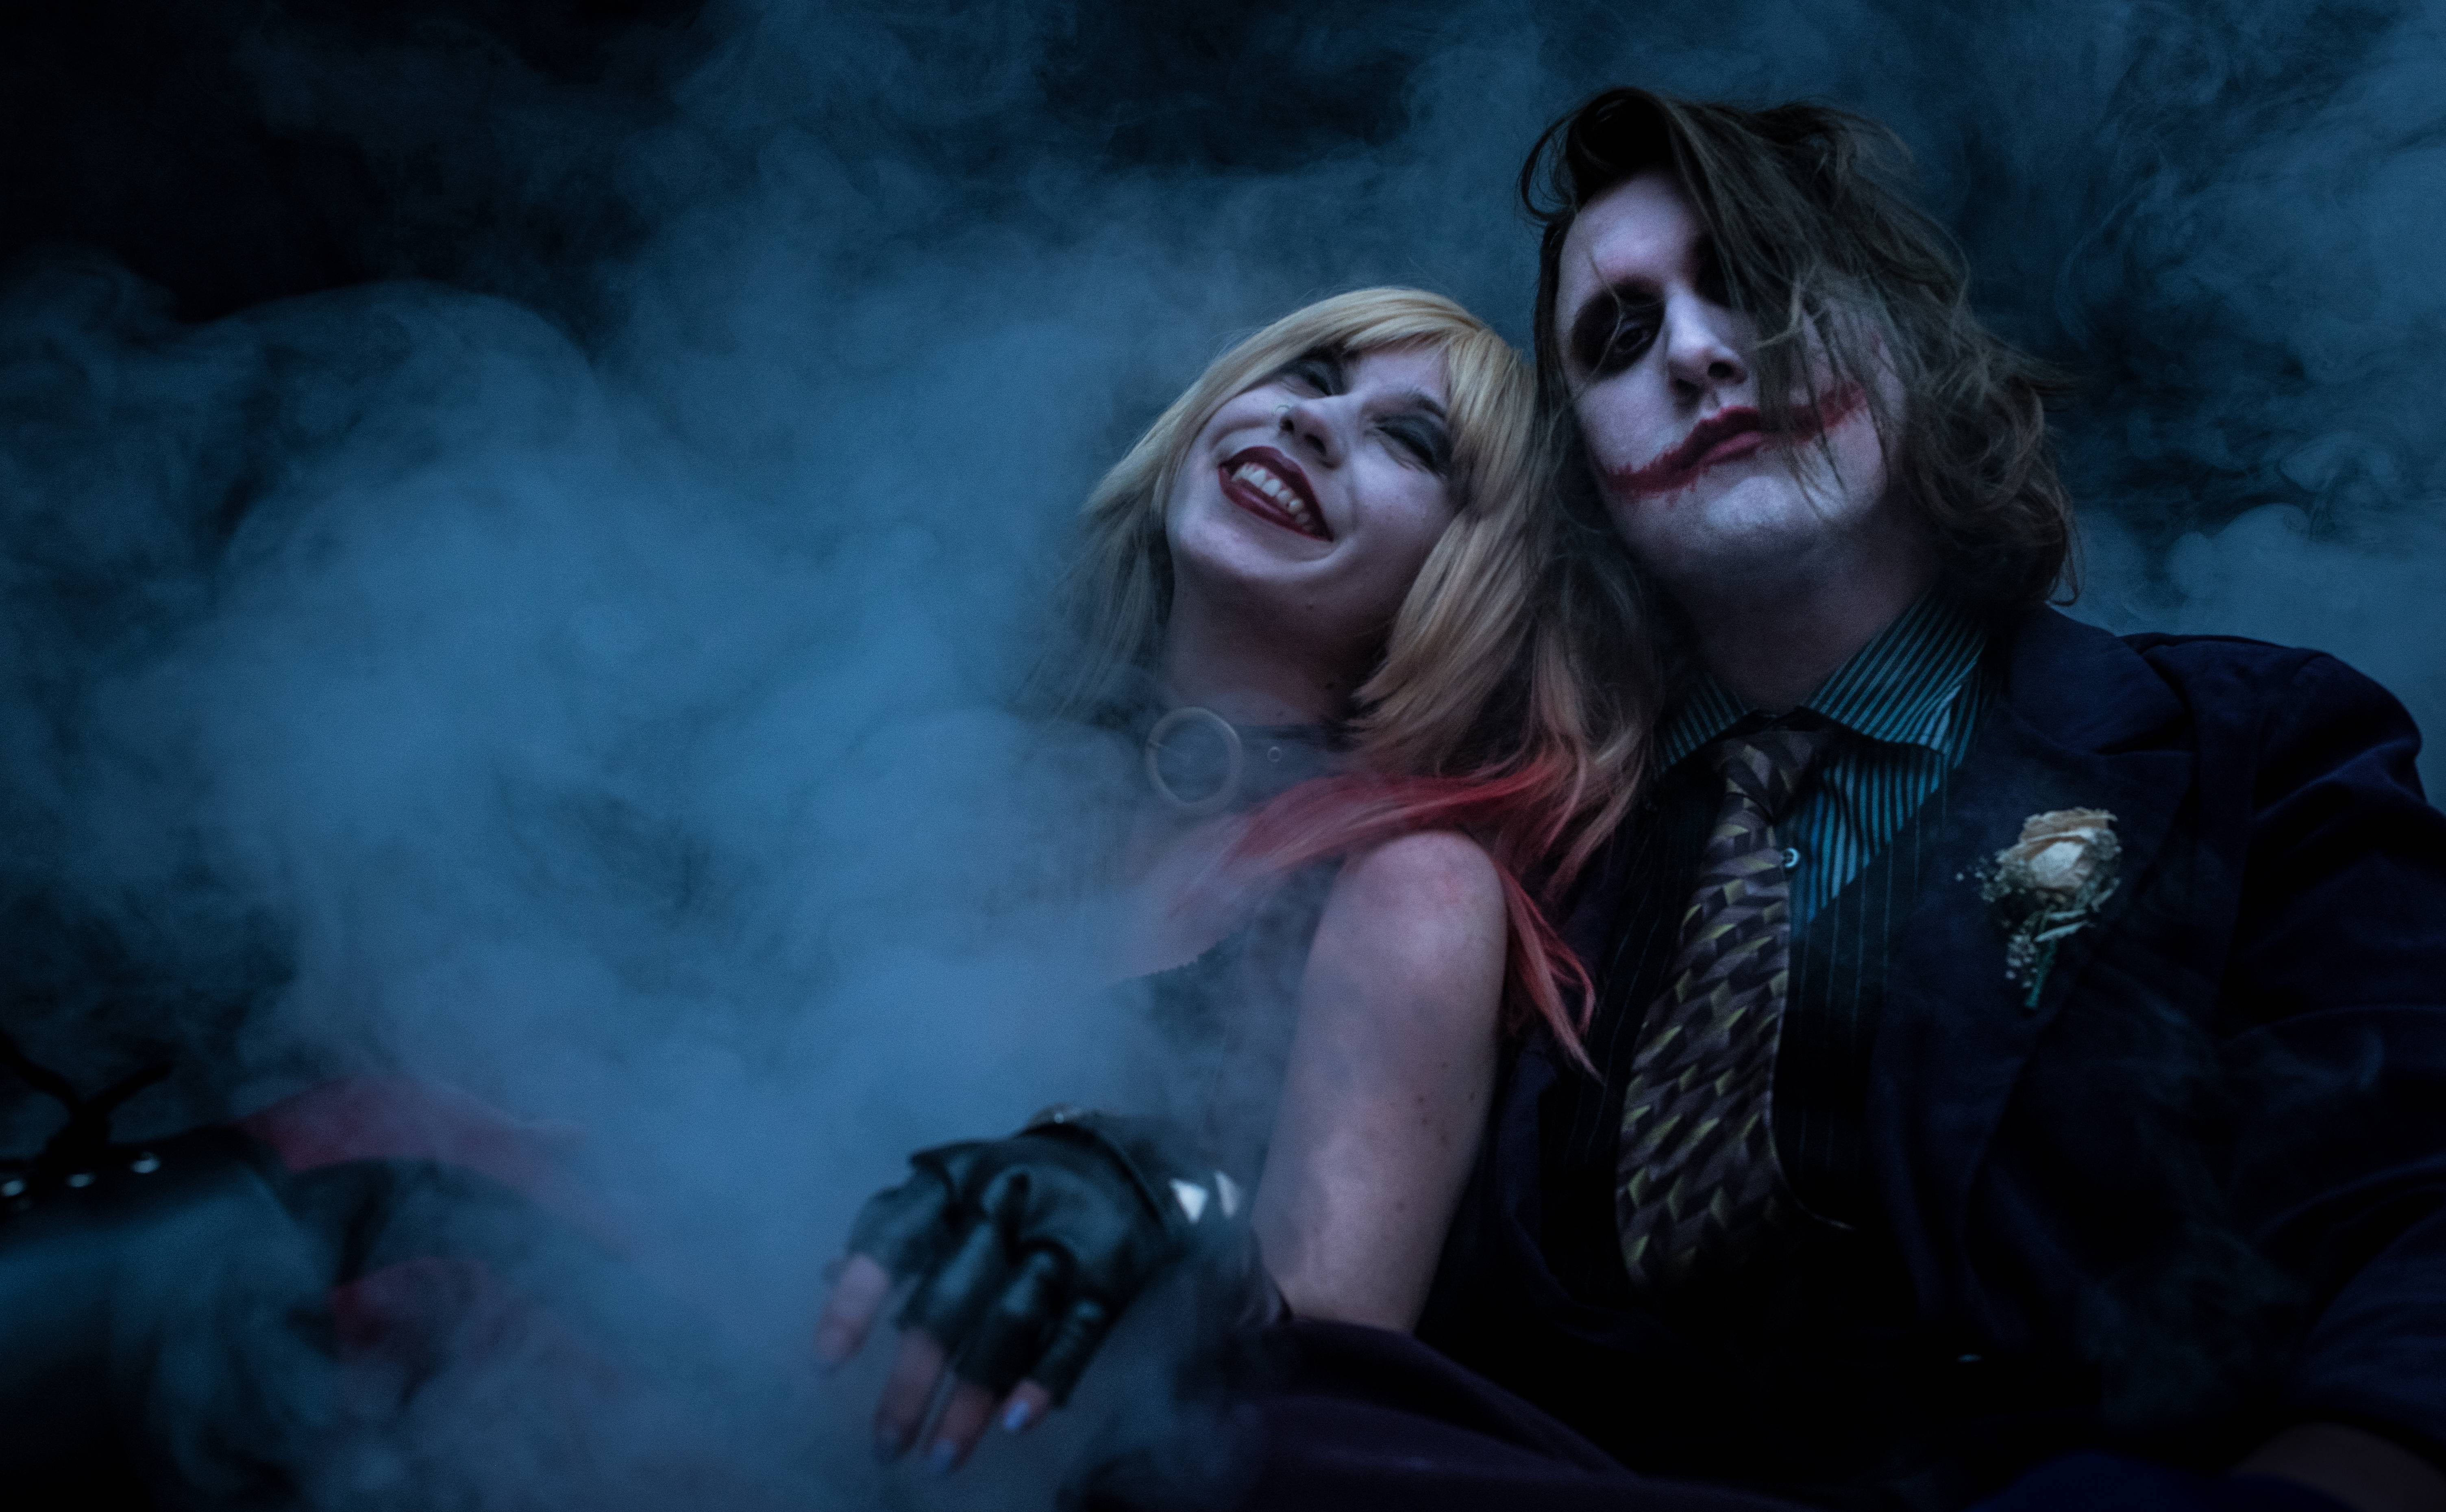 Joker And Harley Quinn 5k Cosplay, HD Superheroes, 4k Wallpapers, Image, Ba...